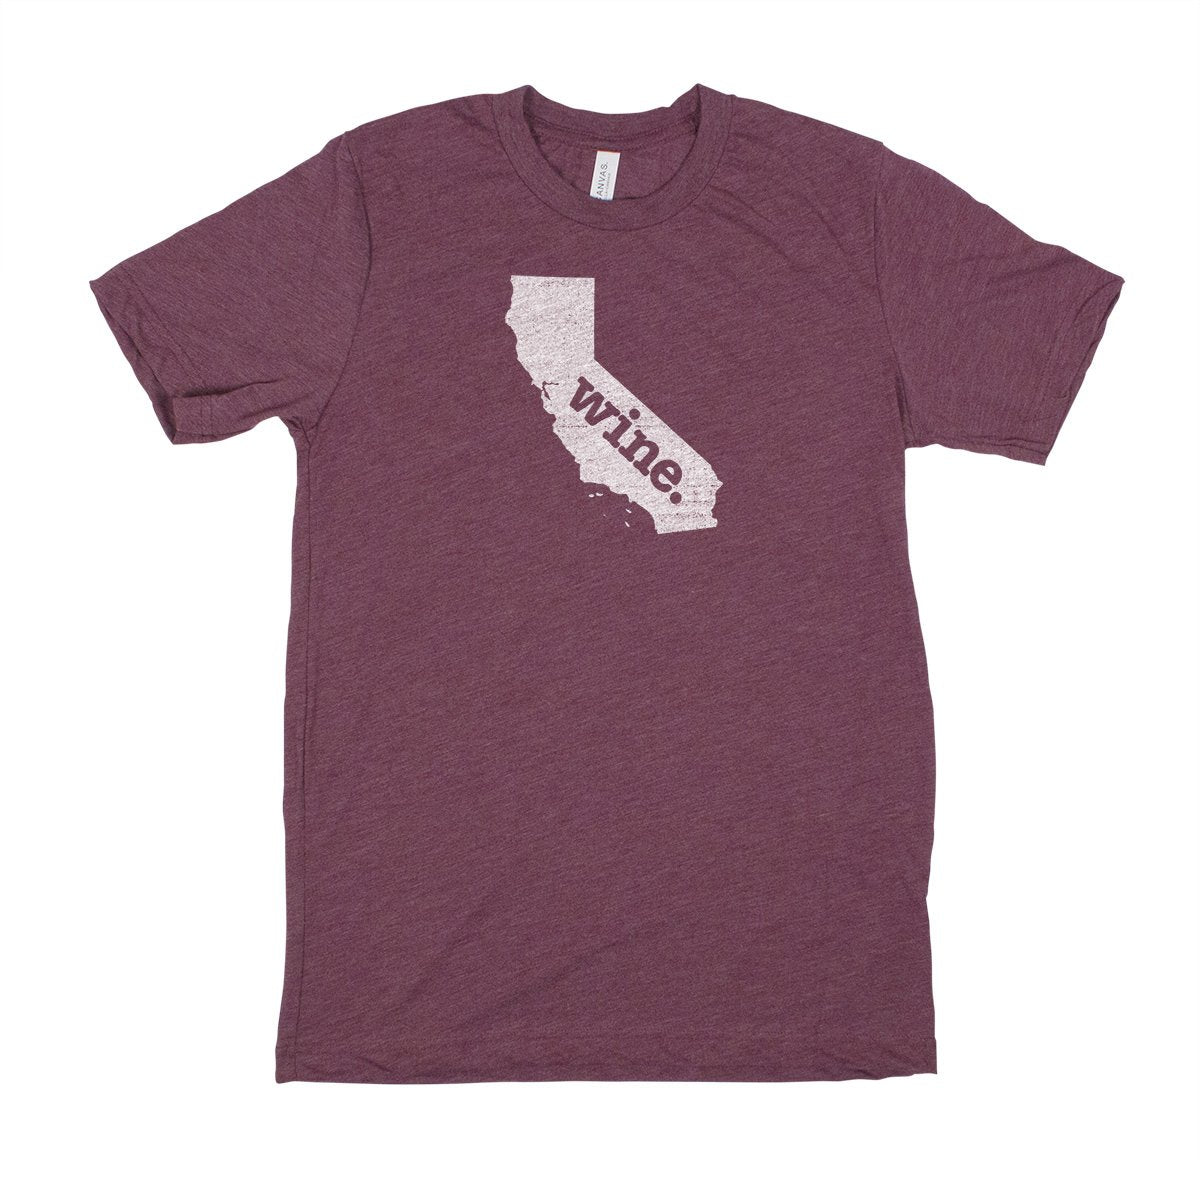 camp. Men's Unisex T-Shirt - Kentucky